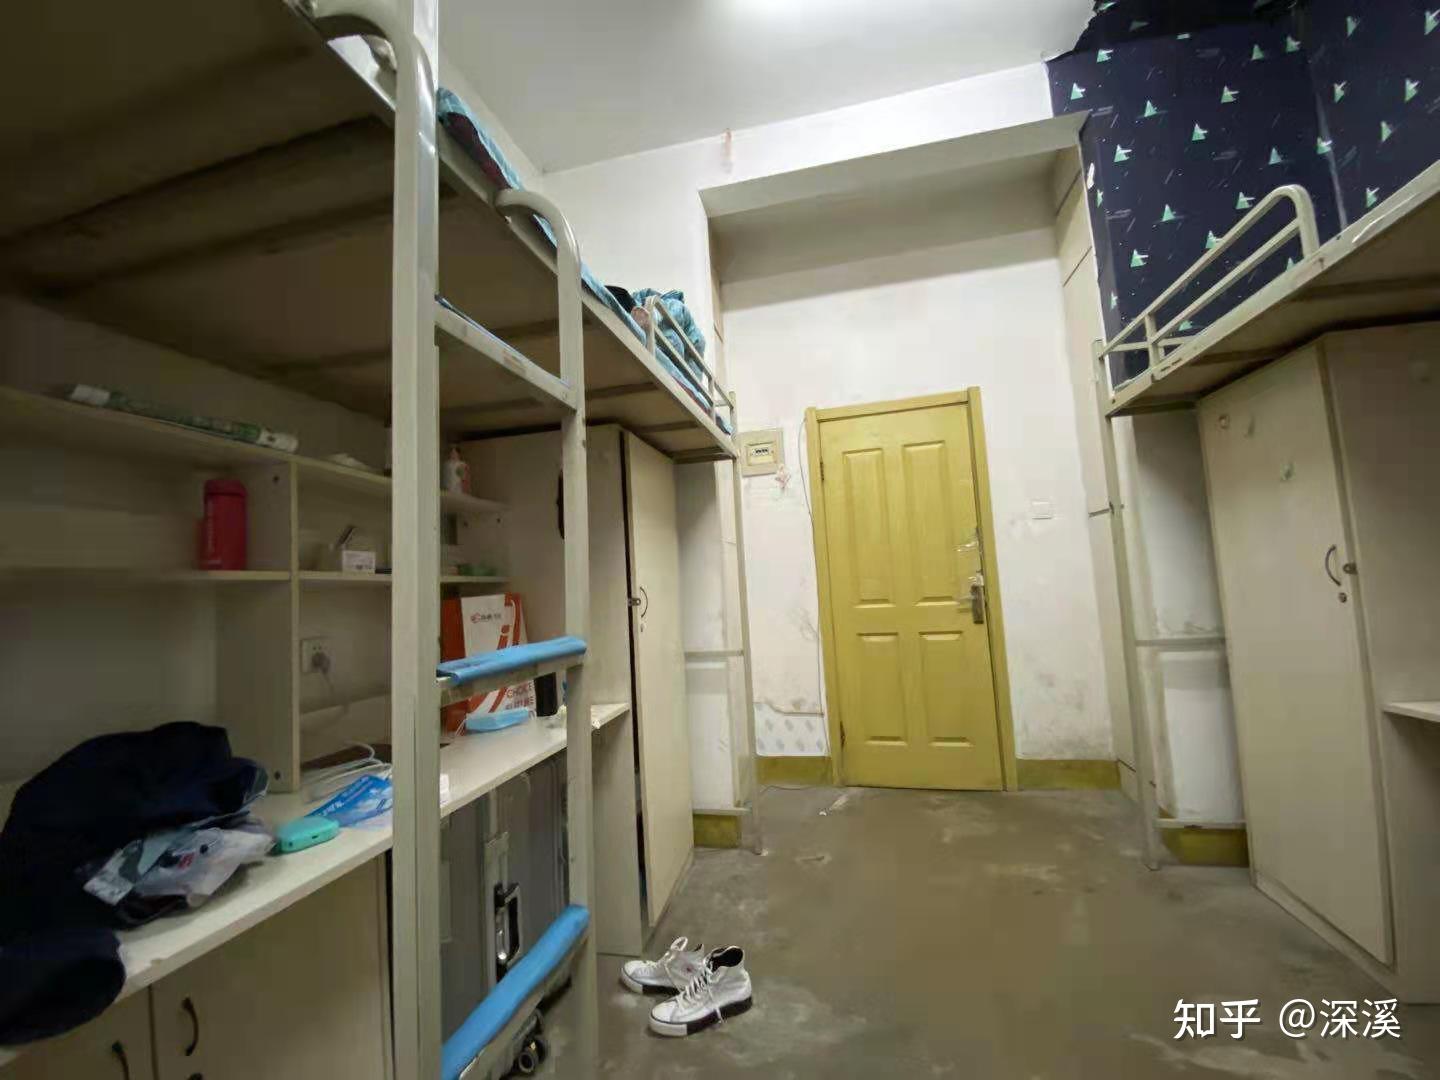 蹲一个辽宁大学的学长学姐问一下,辽宁大学新校区宿舍还是水泥地吗